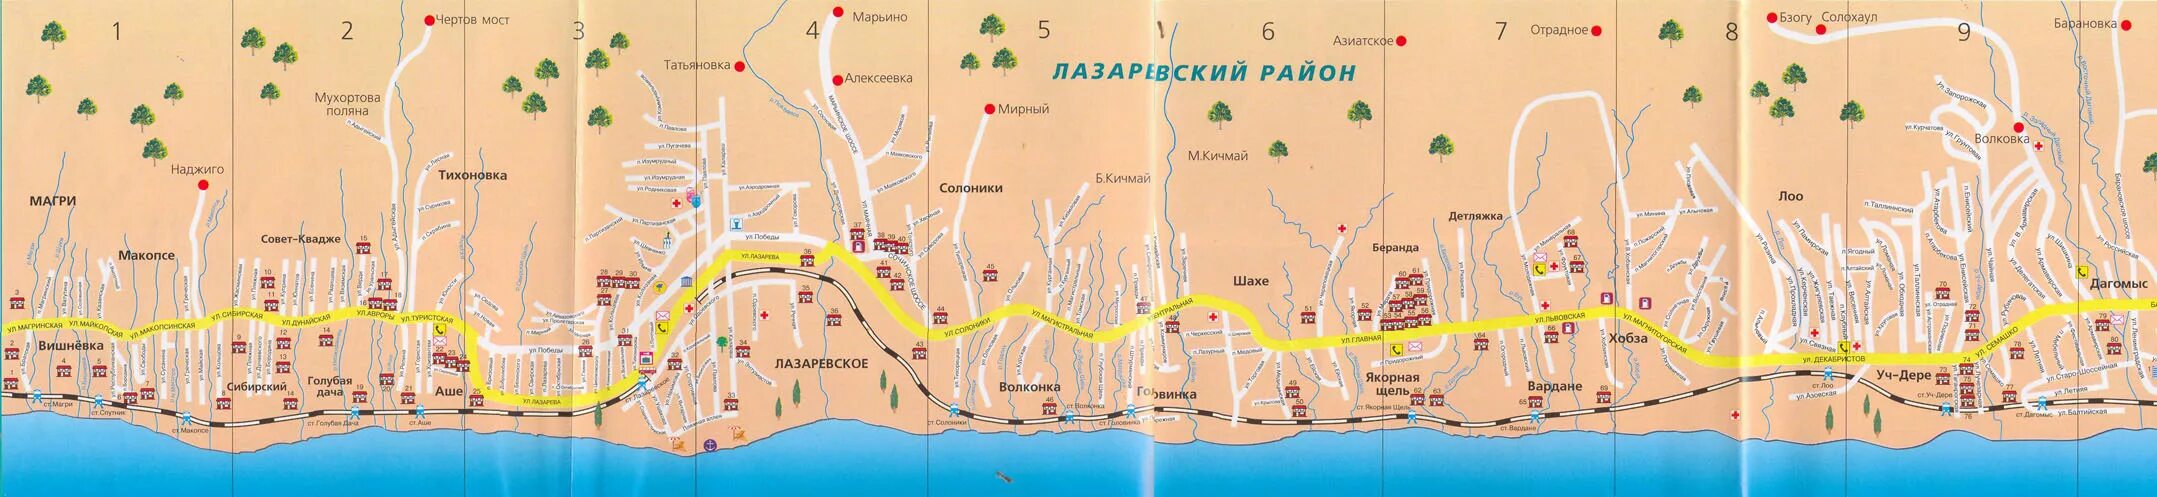 Подробная карта лазаревского